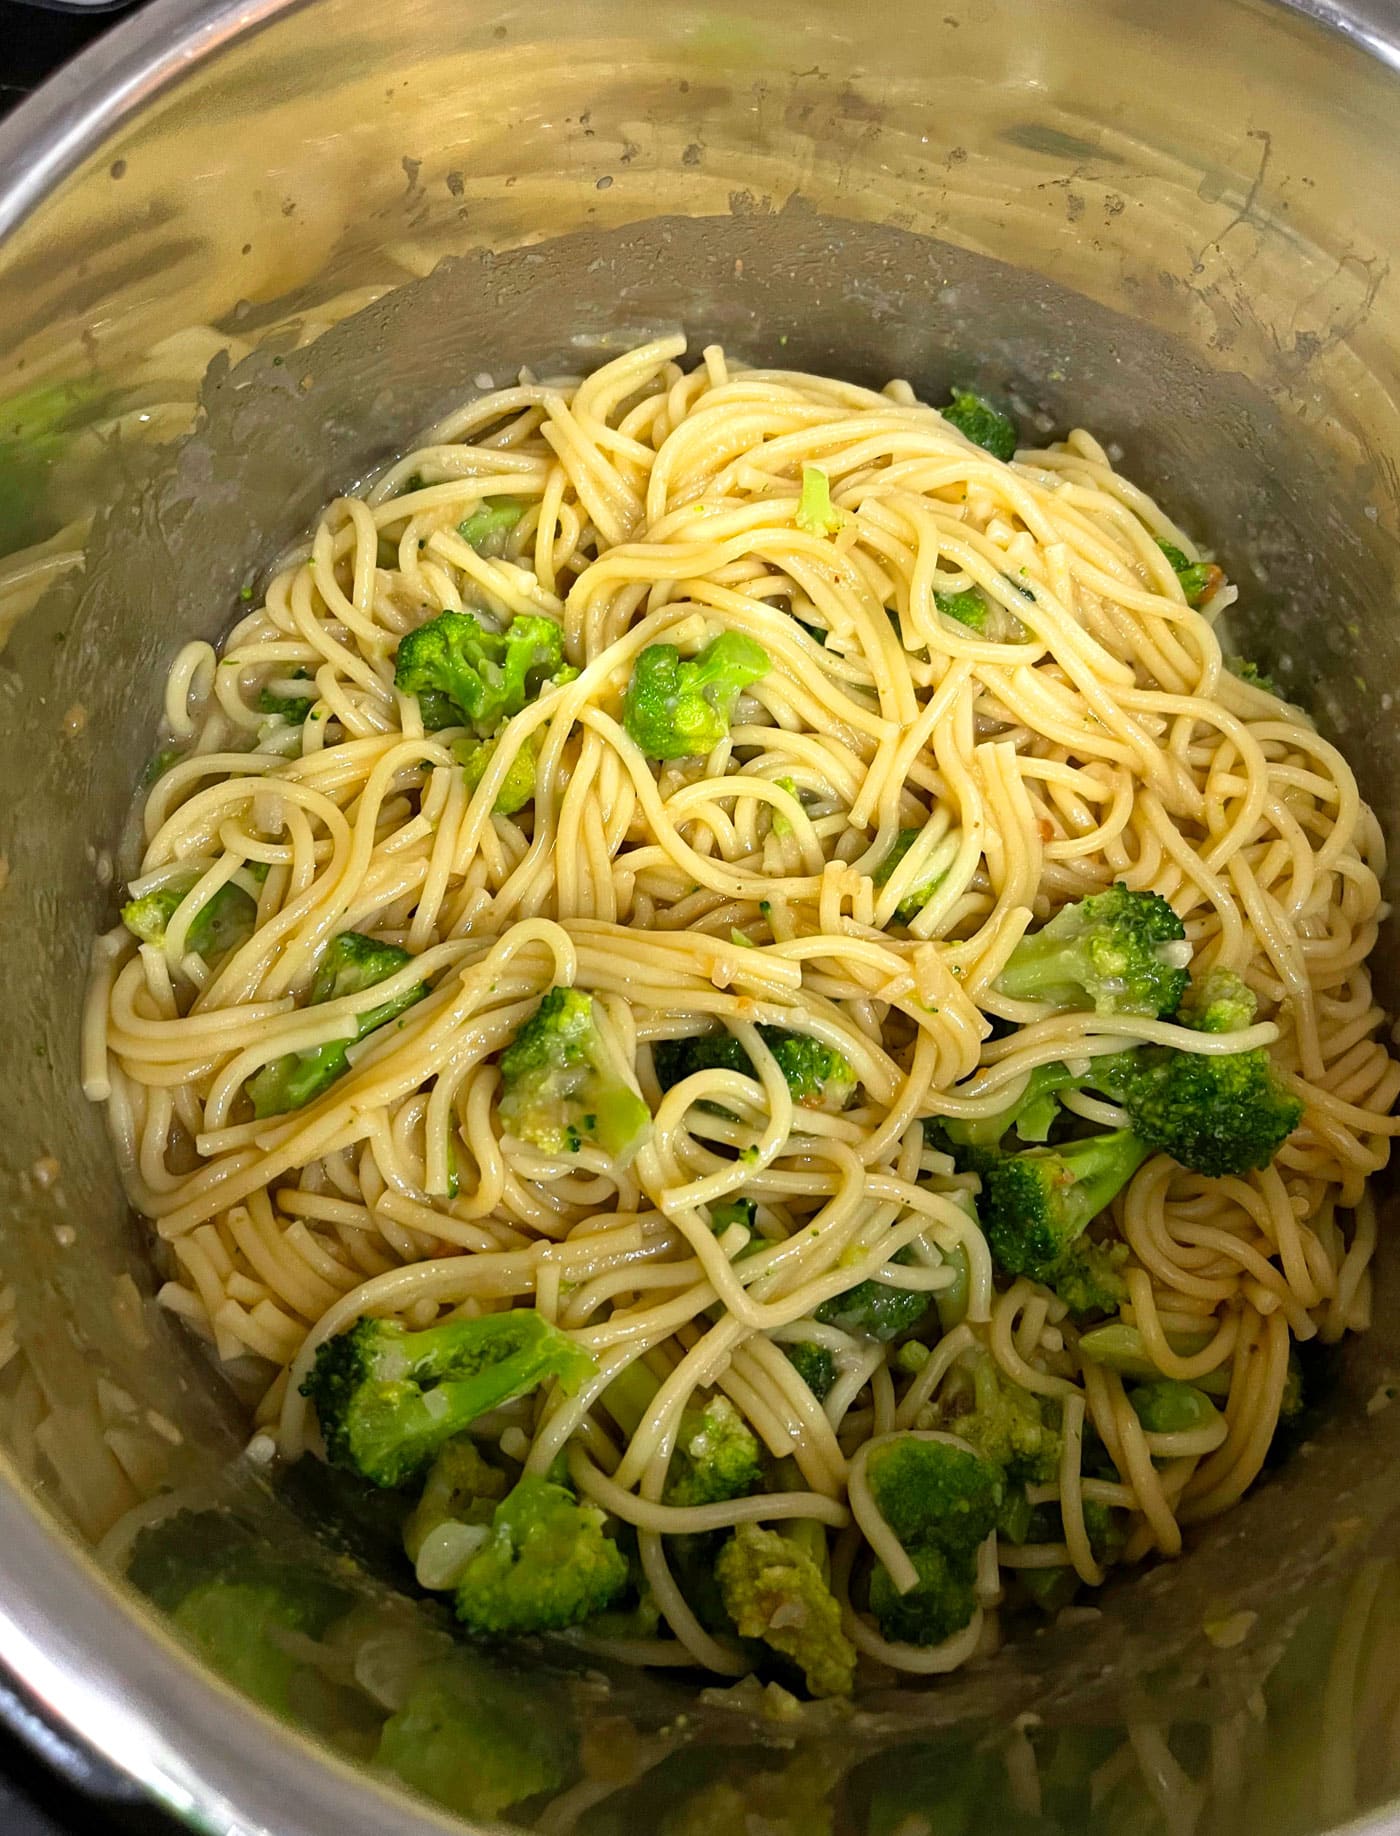 teriyaki broccoli pasta noodles in instant pot pressure cooker